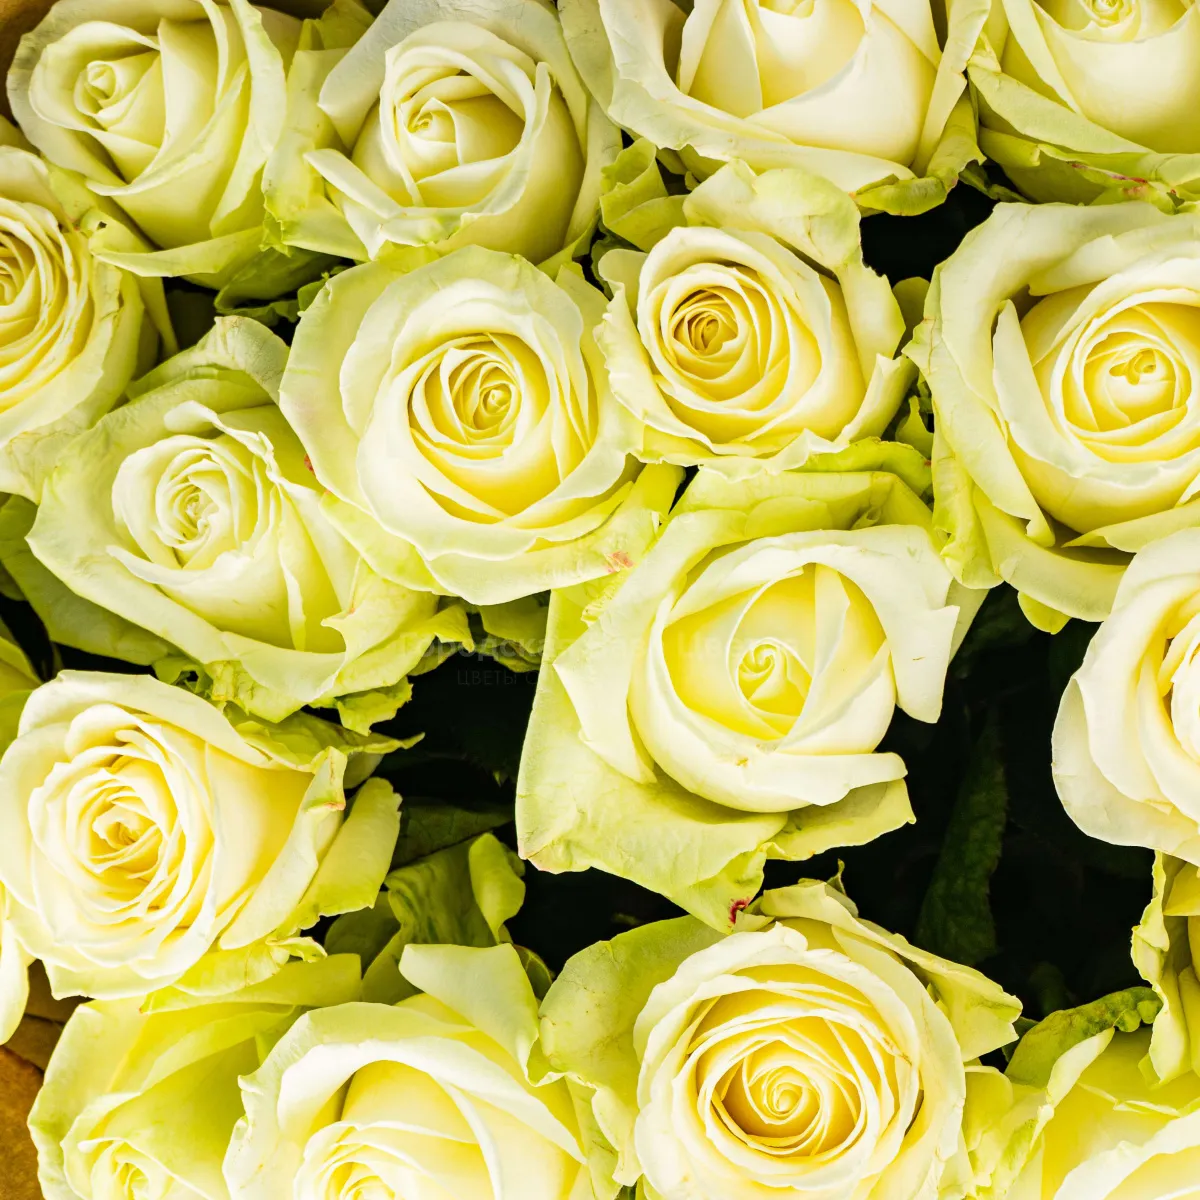 15 бело-зеленых роз (60 см)